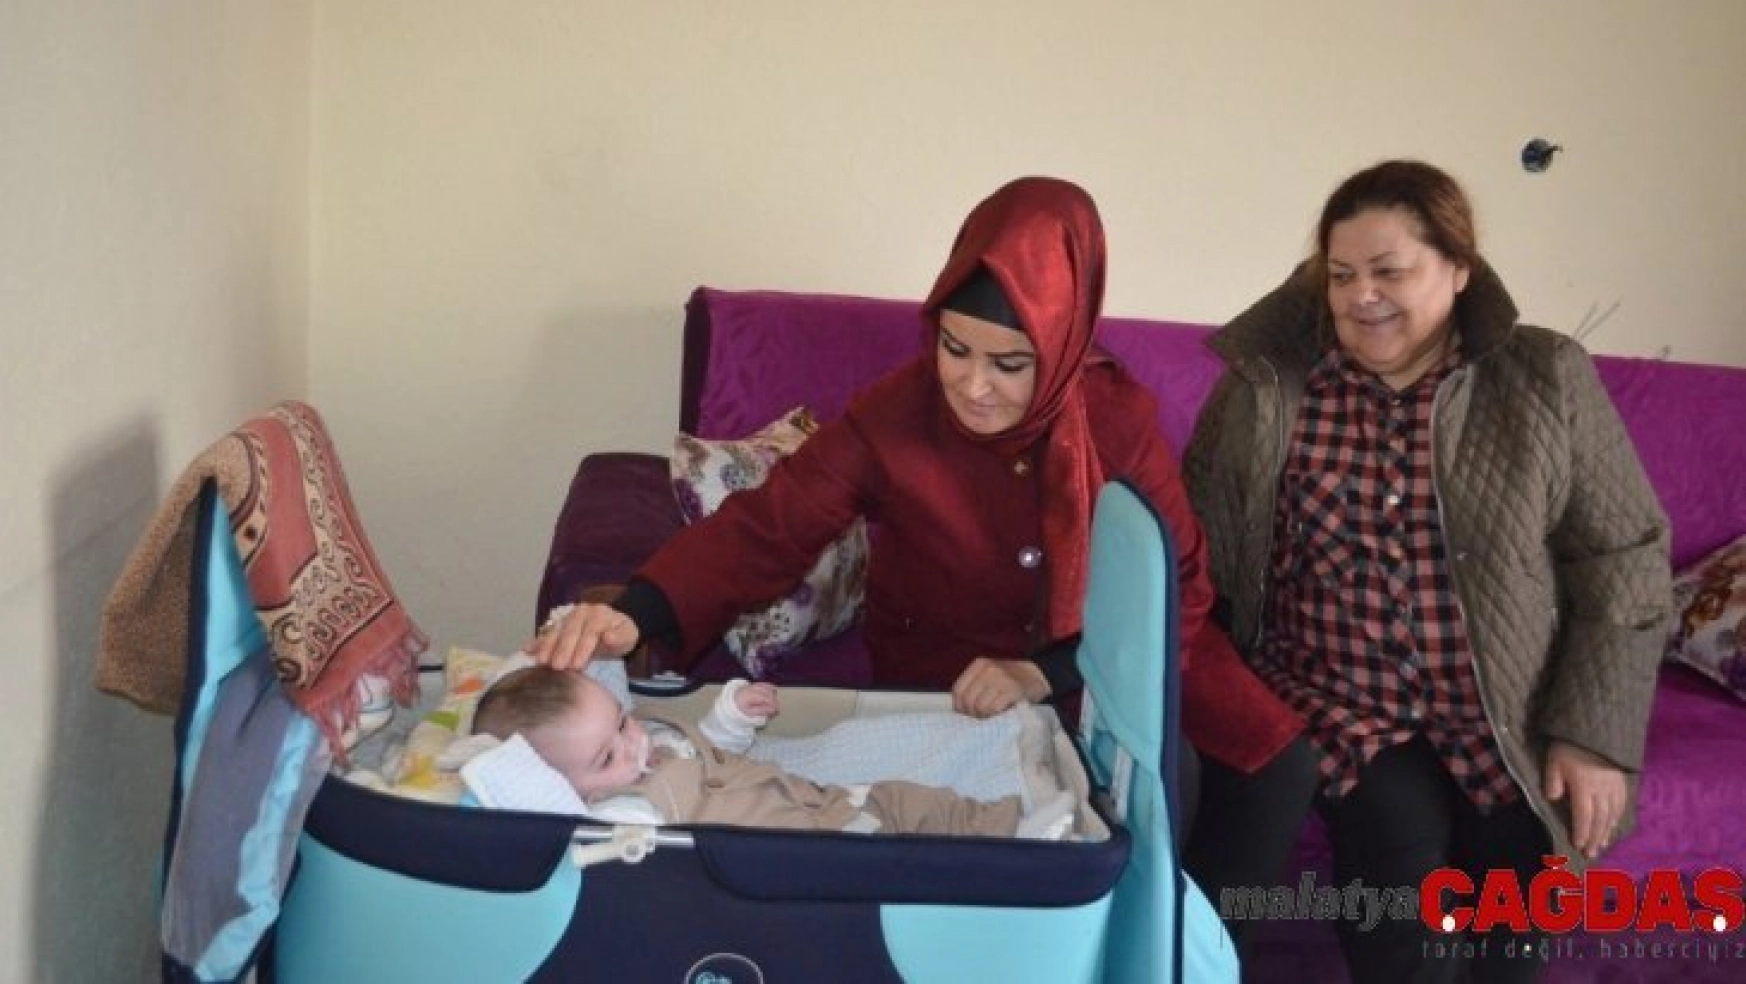 İlçe Sağlık Müdürü Anteplioğlu yardım bekleyen aileyi ziyaret etti